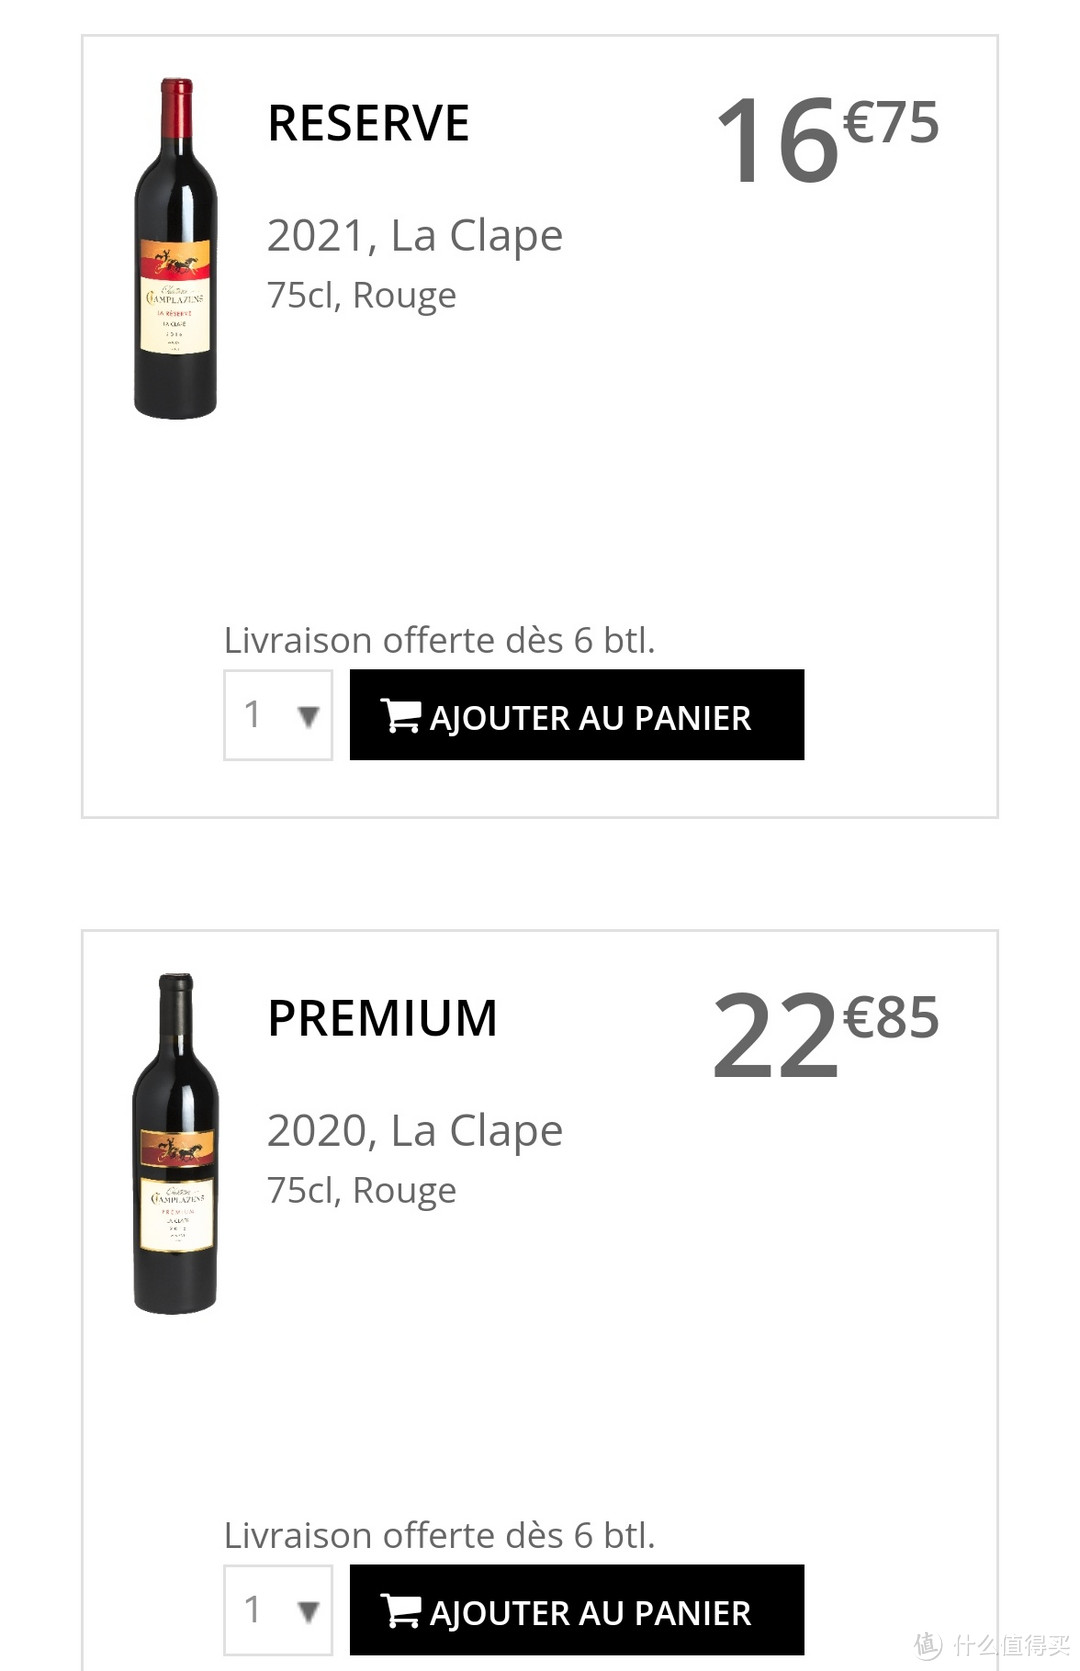 新年份酒庄网站售价16.75欧元